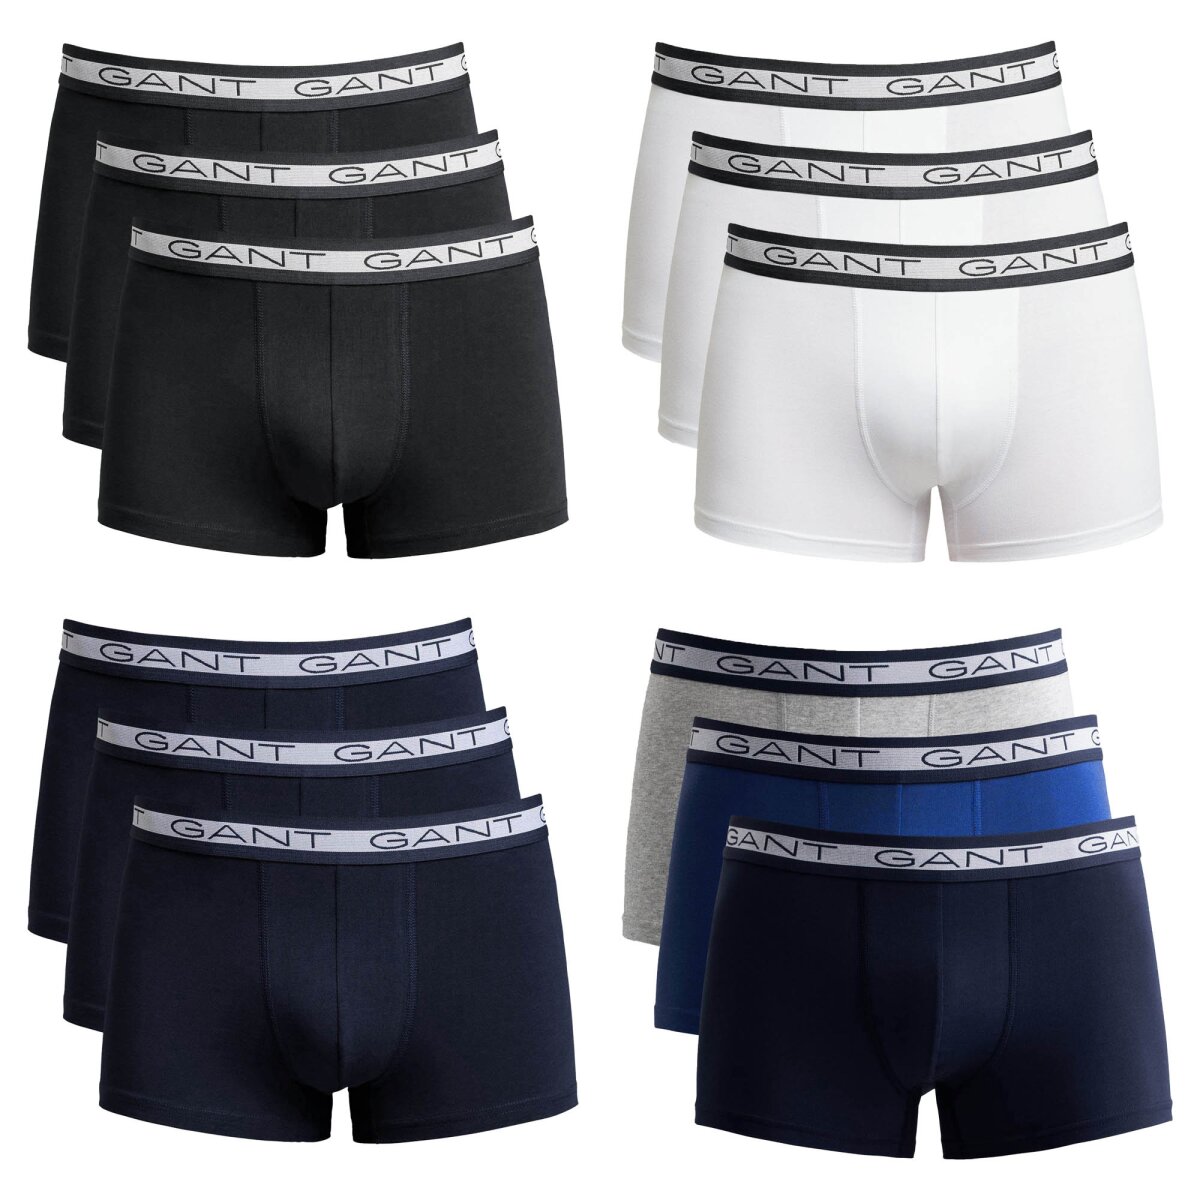 GANT Men's Boxer Shorts, 3-pack - BASIC TRUNKS, 44,95 €